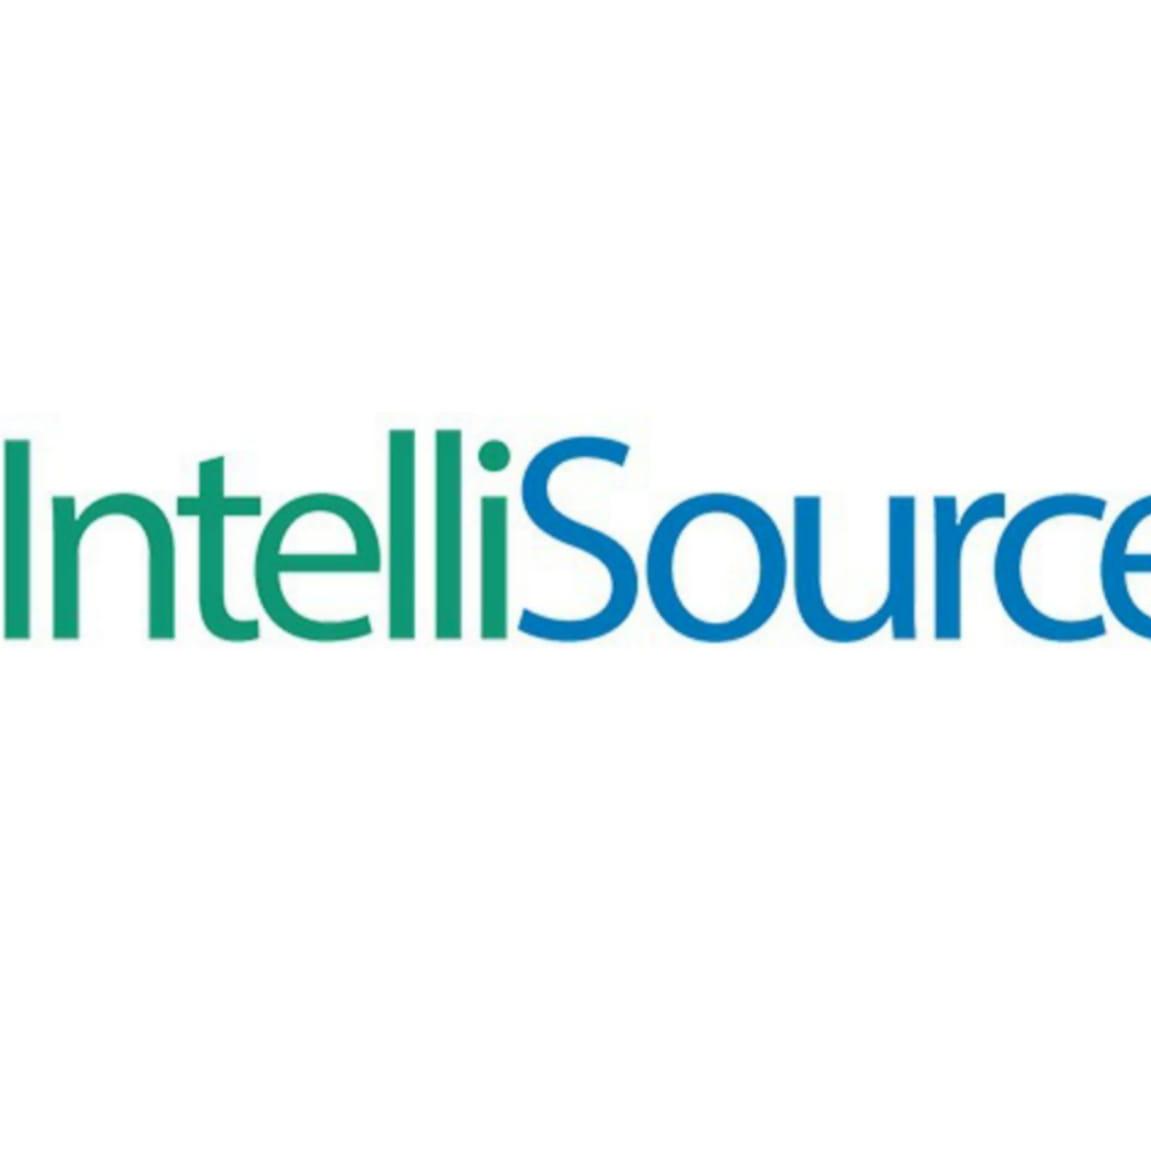 IntelliSource Technology